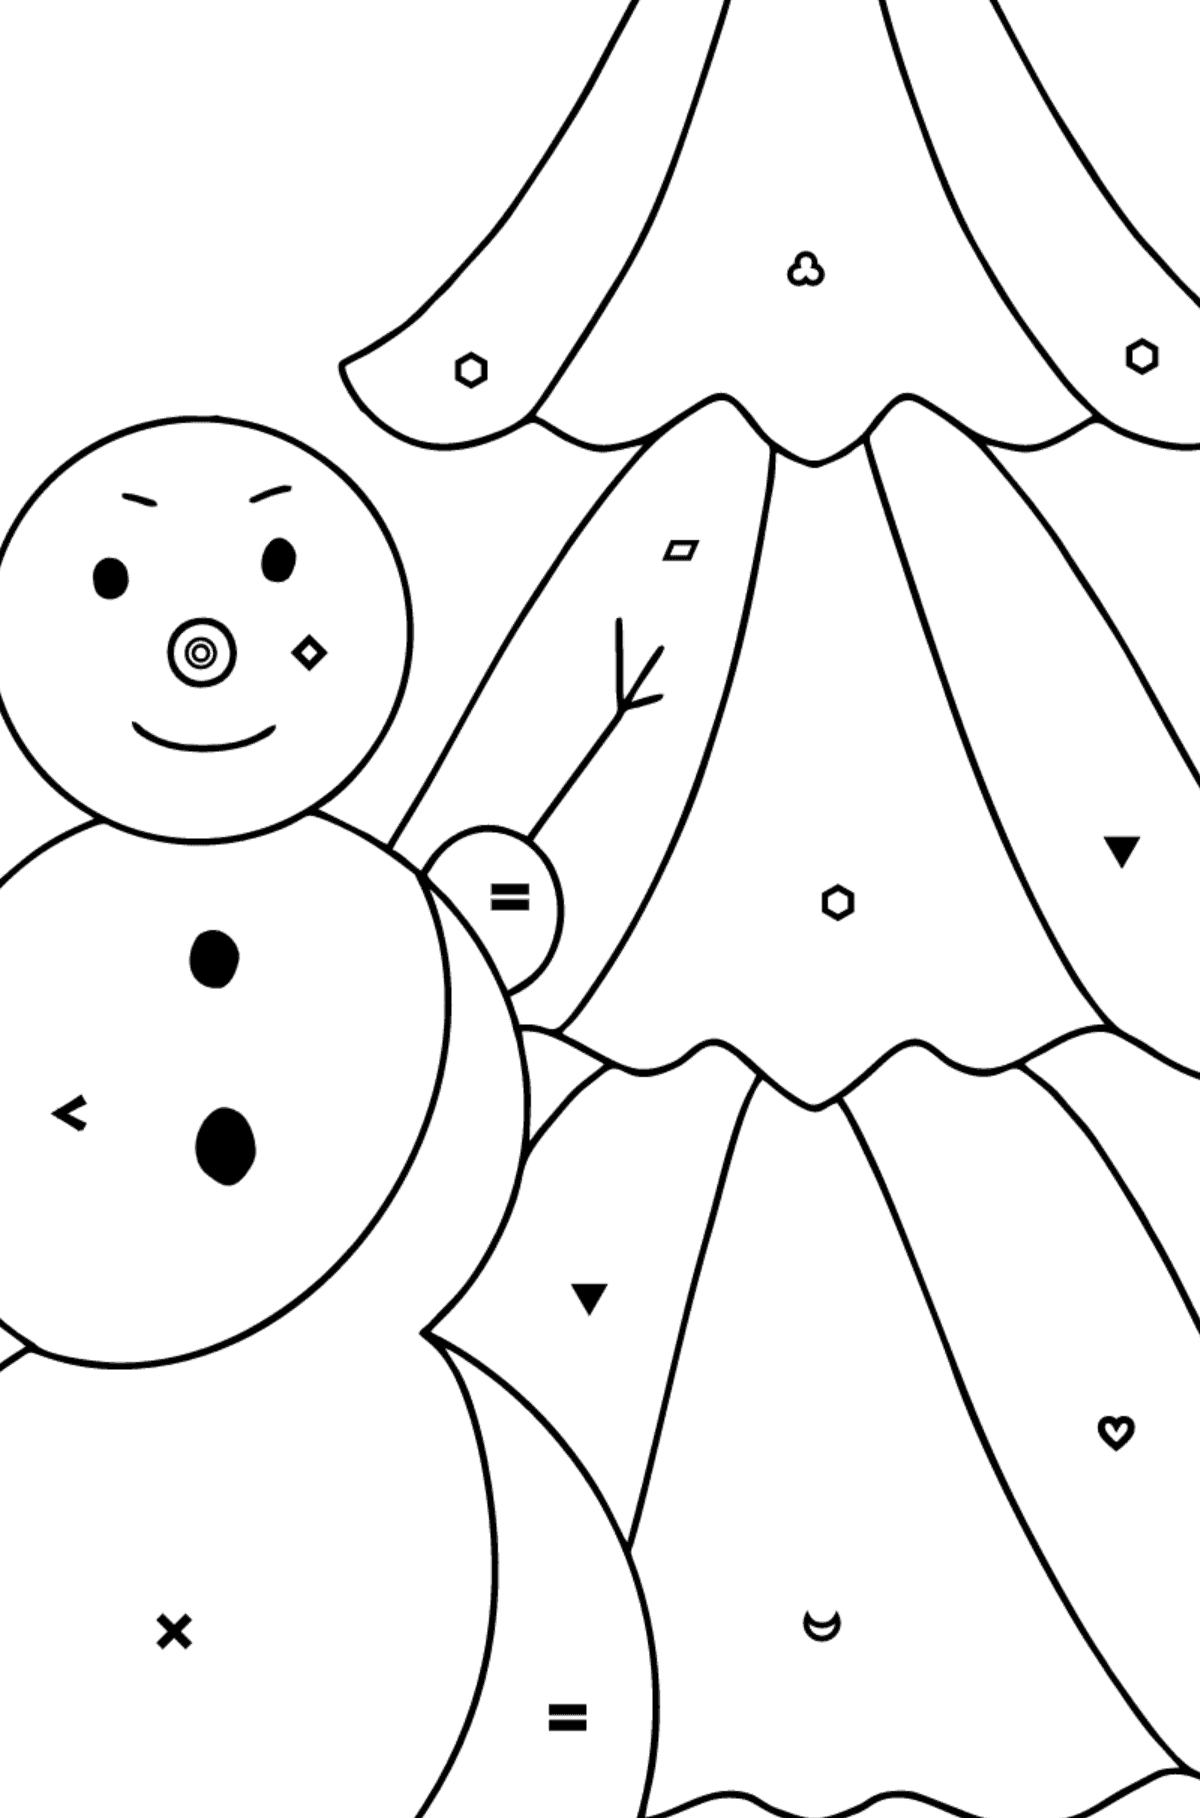 Tegning til farvning snemand og træ (vanskeligt) - farvelægning side efter symboler og geometriske former for børn